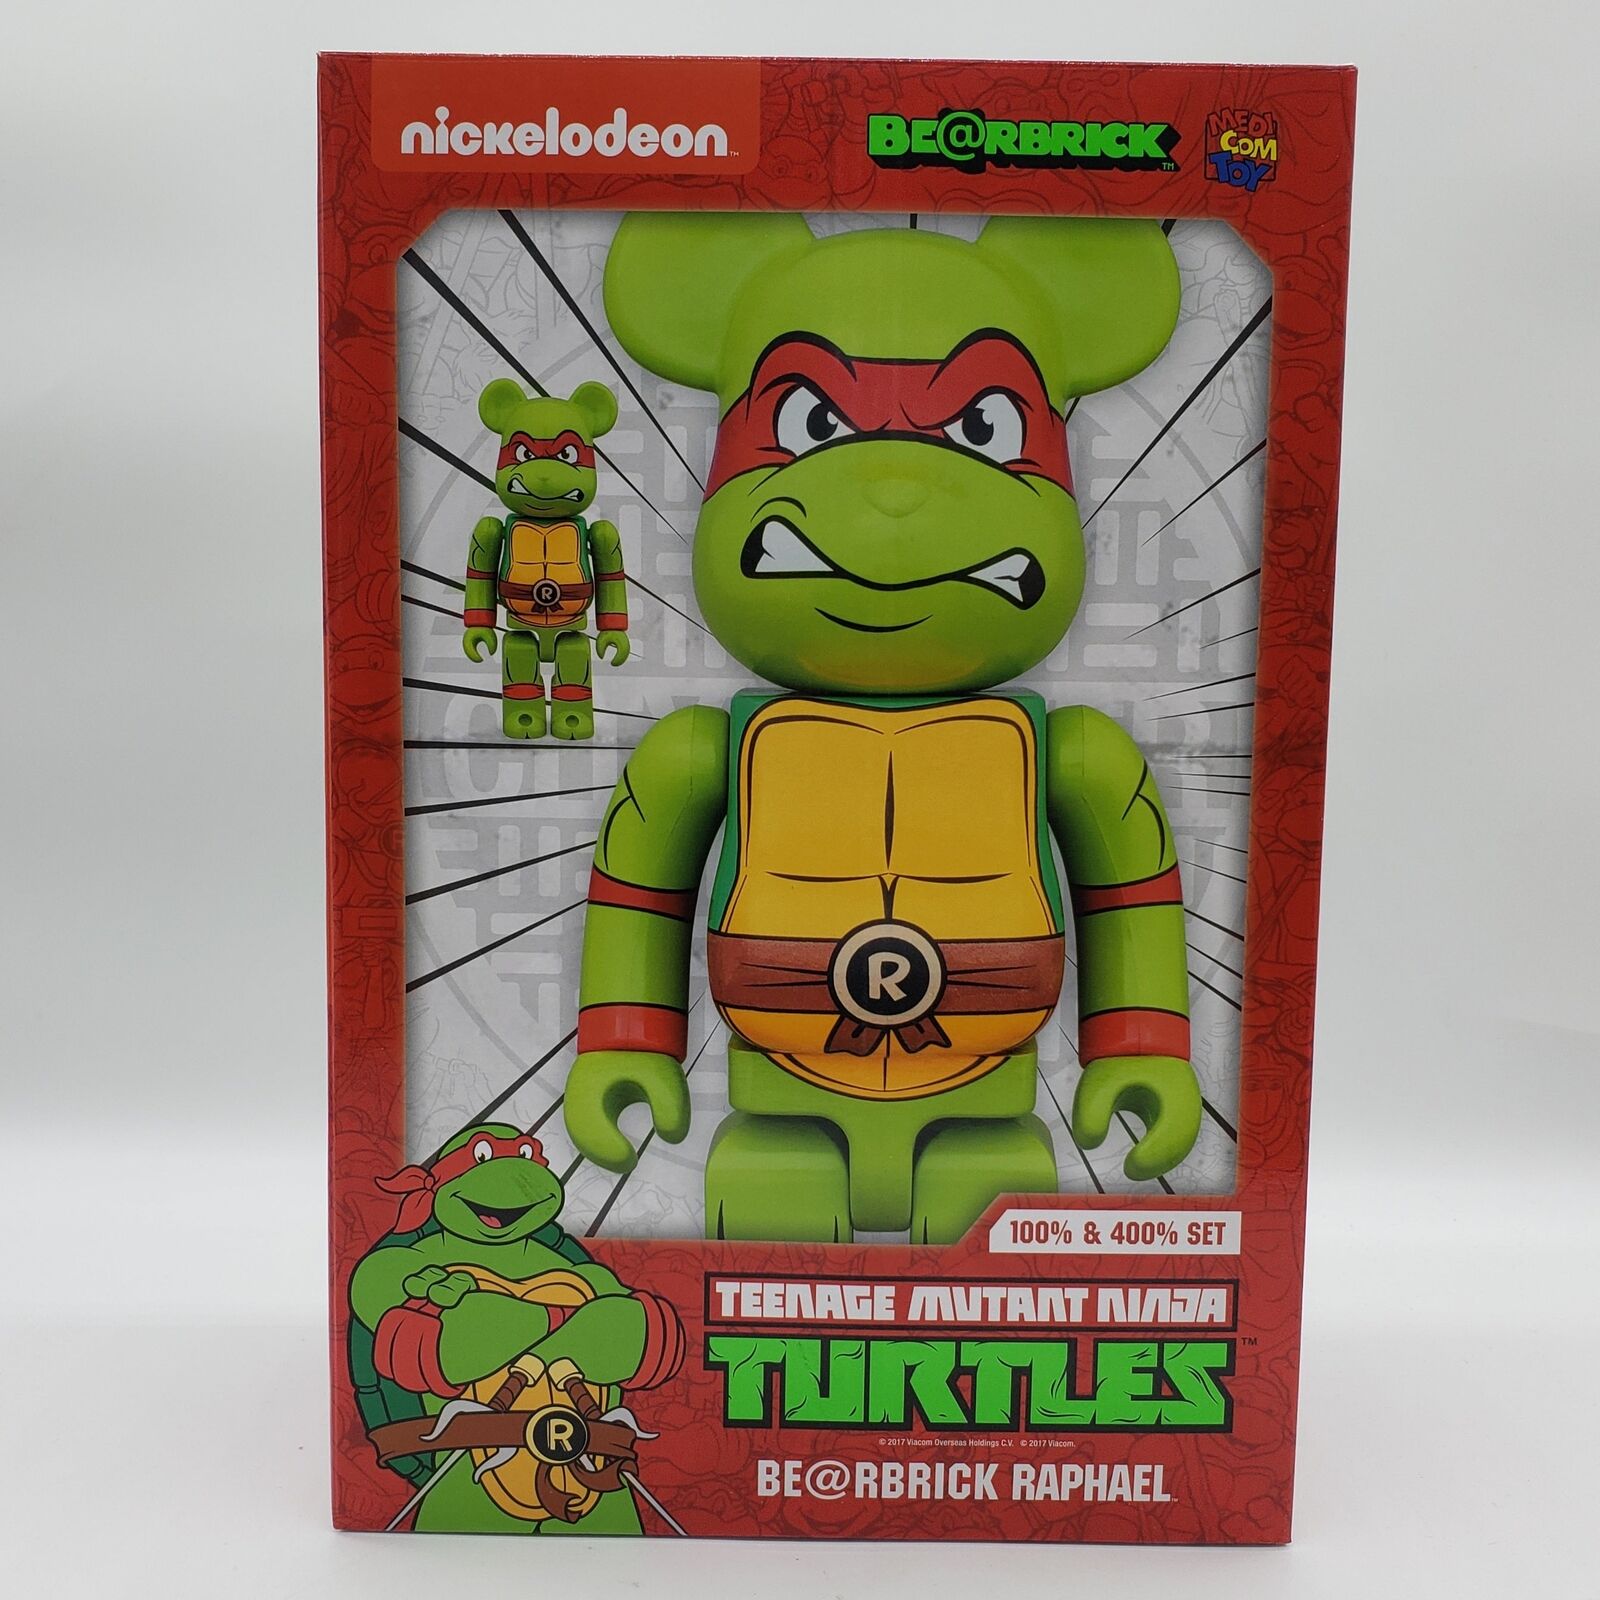 Medicom Toy Bearbrick: Teenage Mutant Ninja Turtles Raphael 100% and 400%